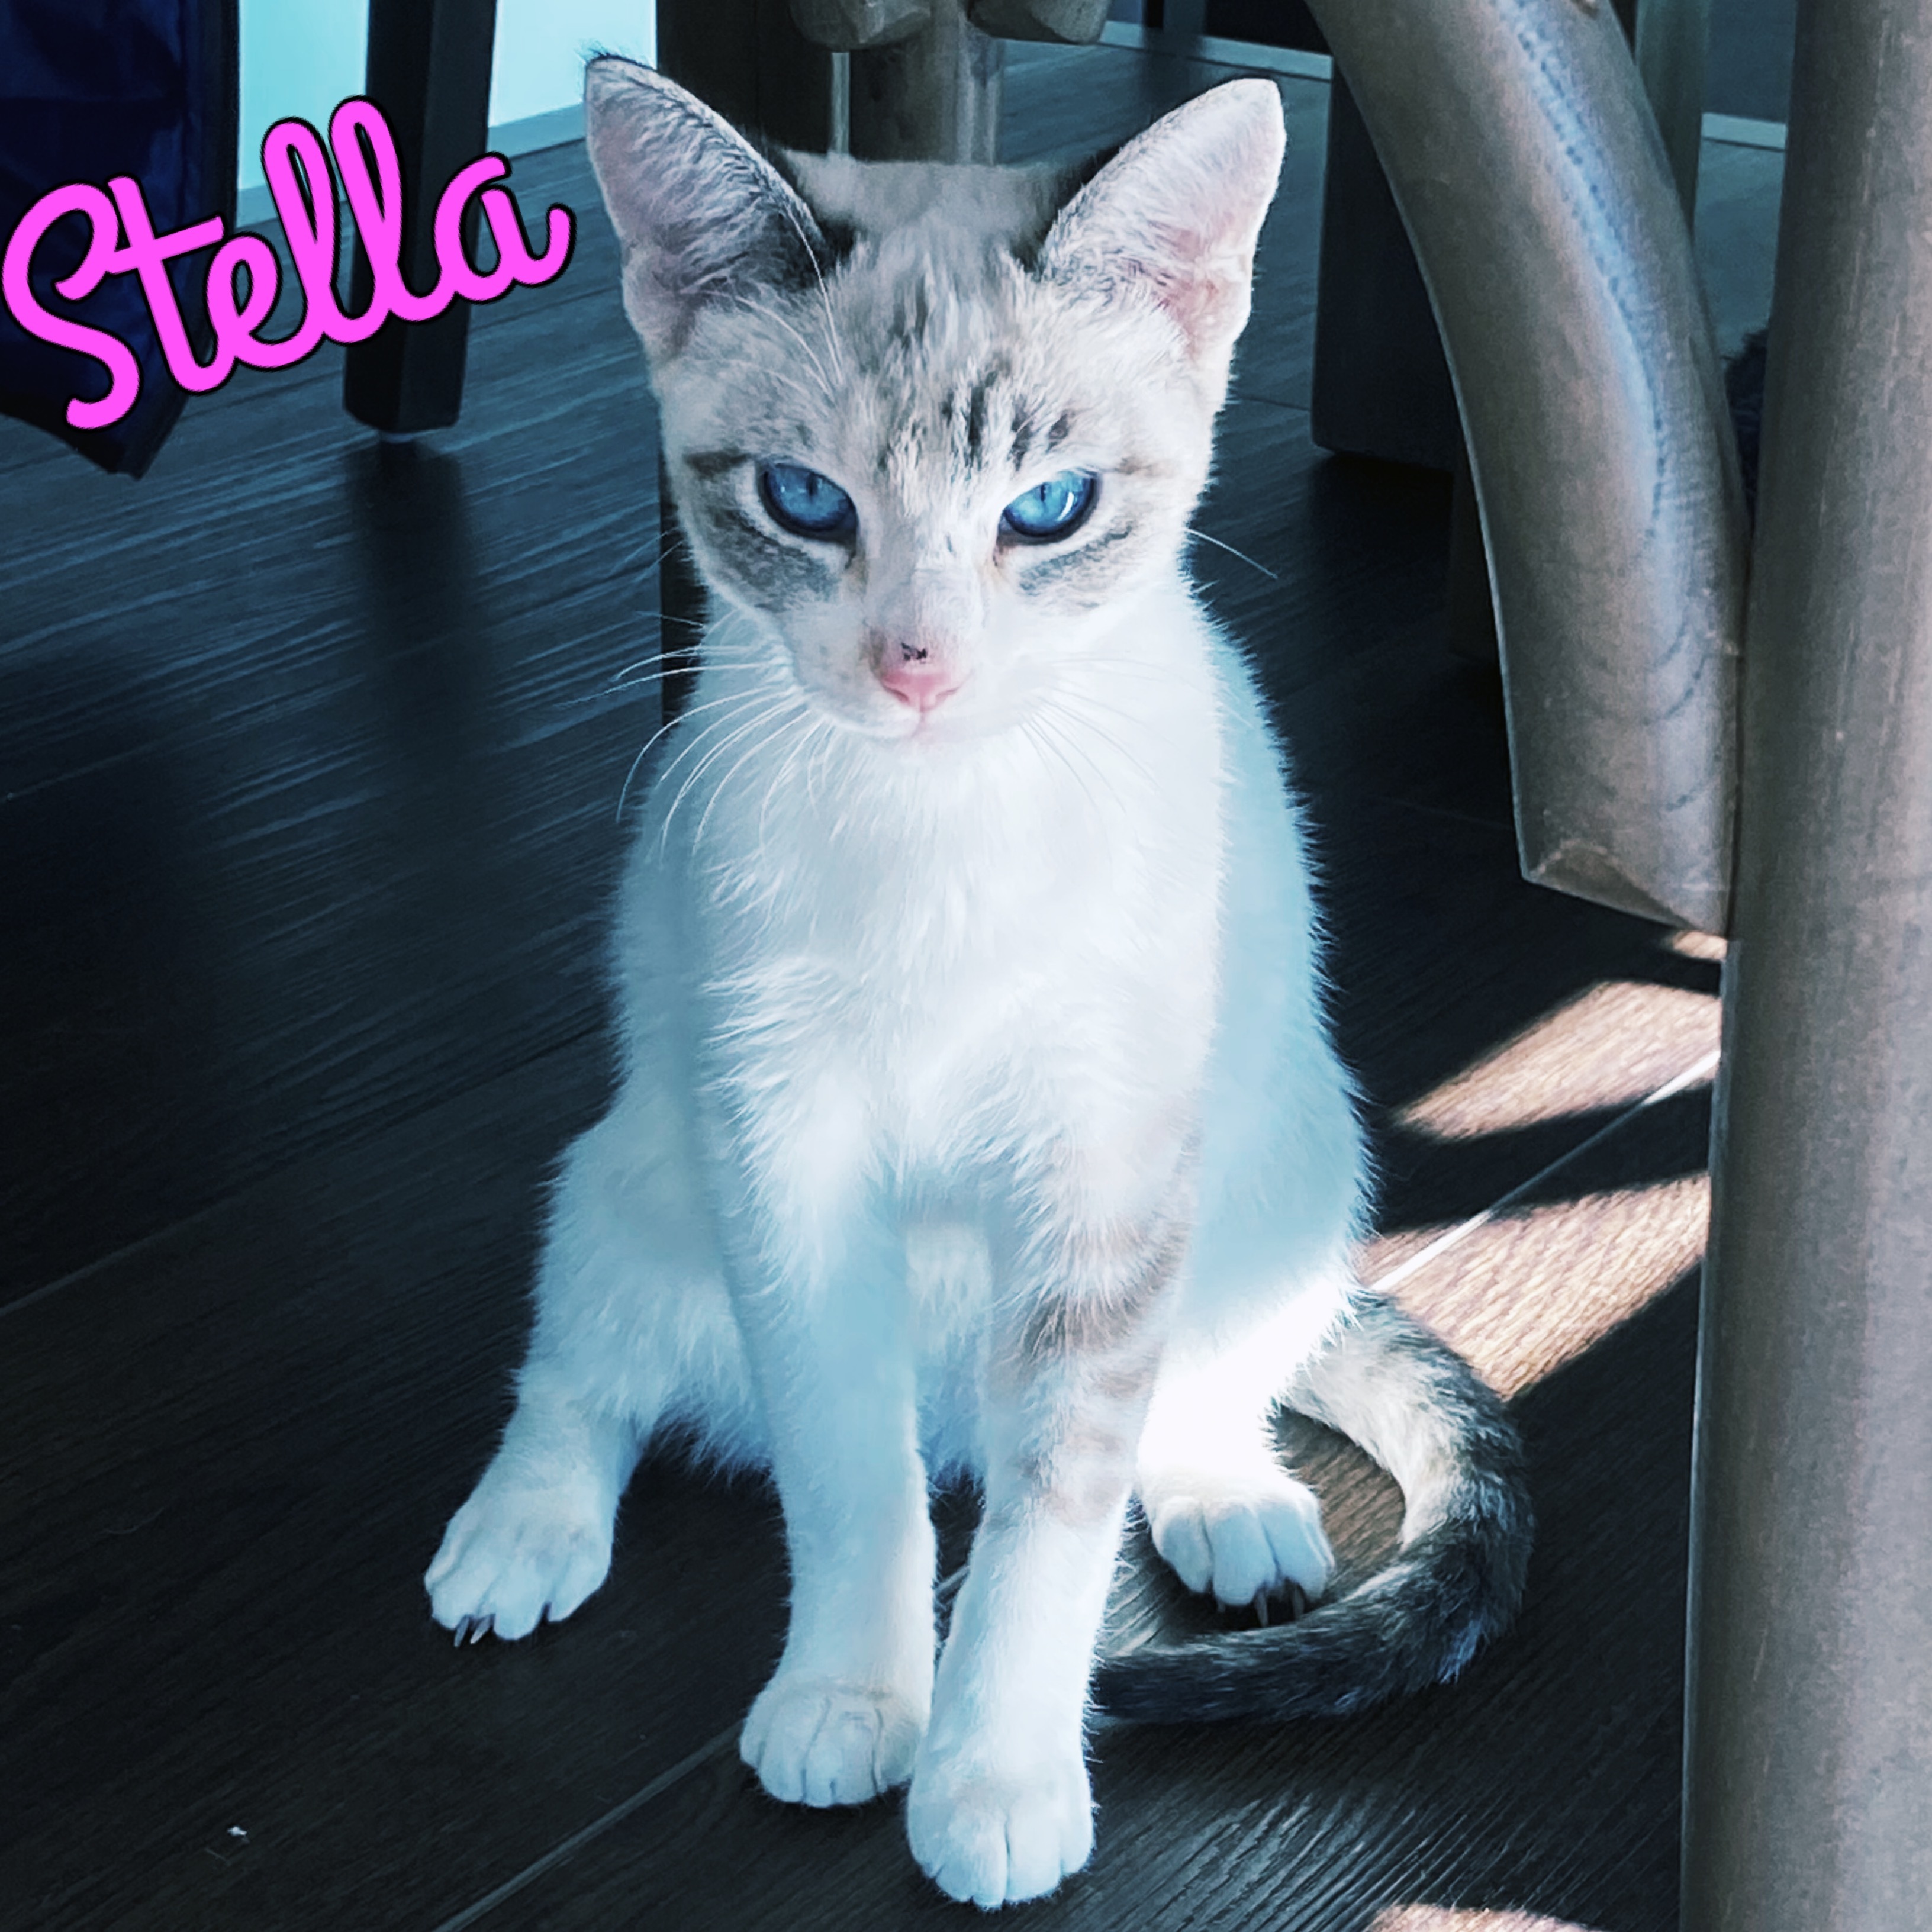 Stella detail page